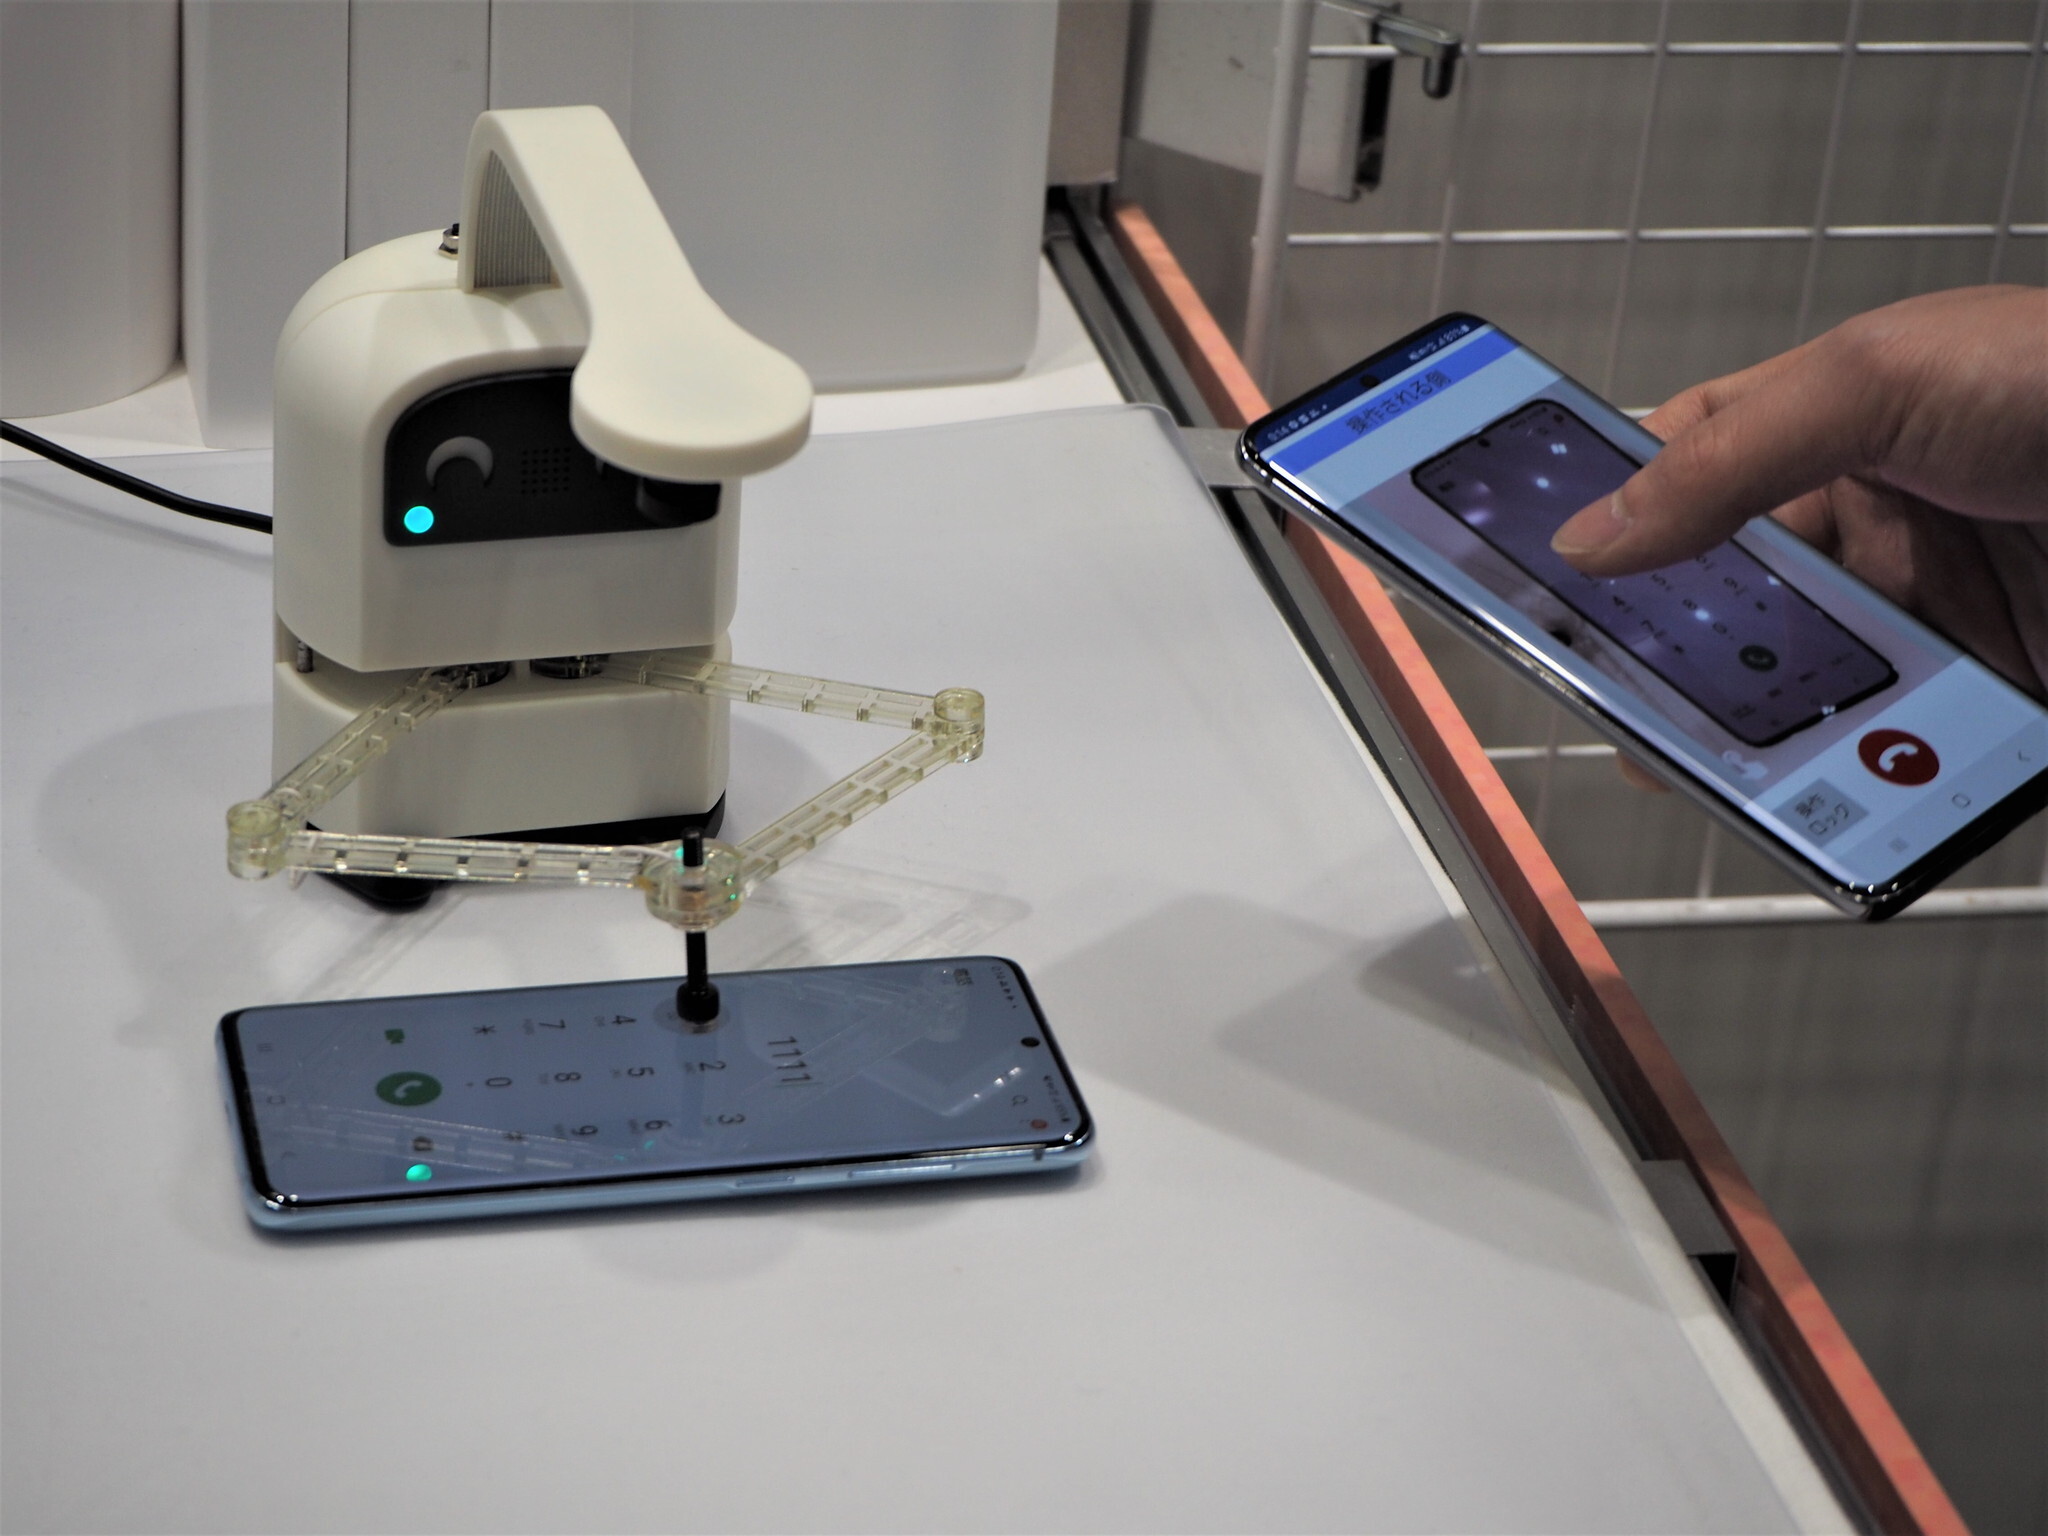 ユカイ工学と開発を進めている、スマートフォン操作支援ロボット。相手のスマートフォンを遠隔で操作すると、その操作をロボットが反映してくれるというもので、シニアのスマートフォン操作支援などの活用が見込まれている